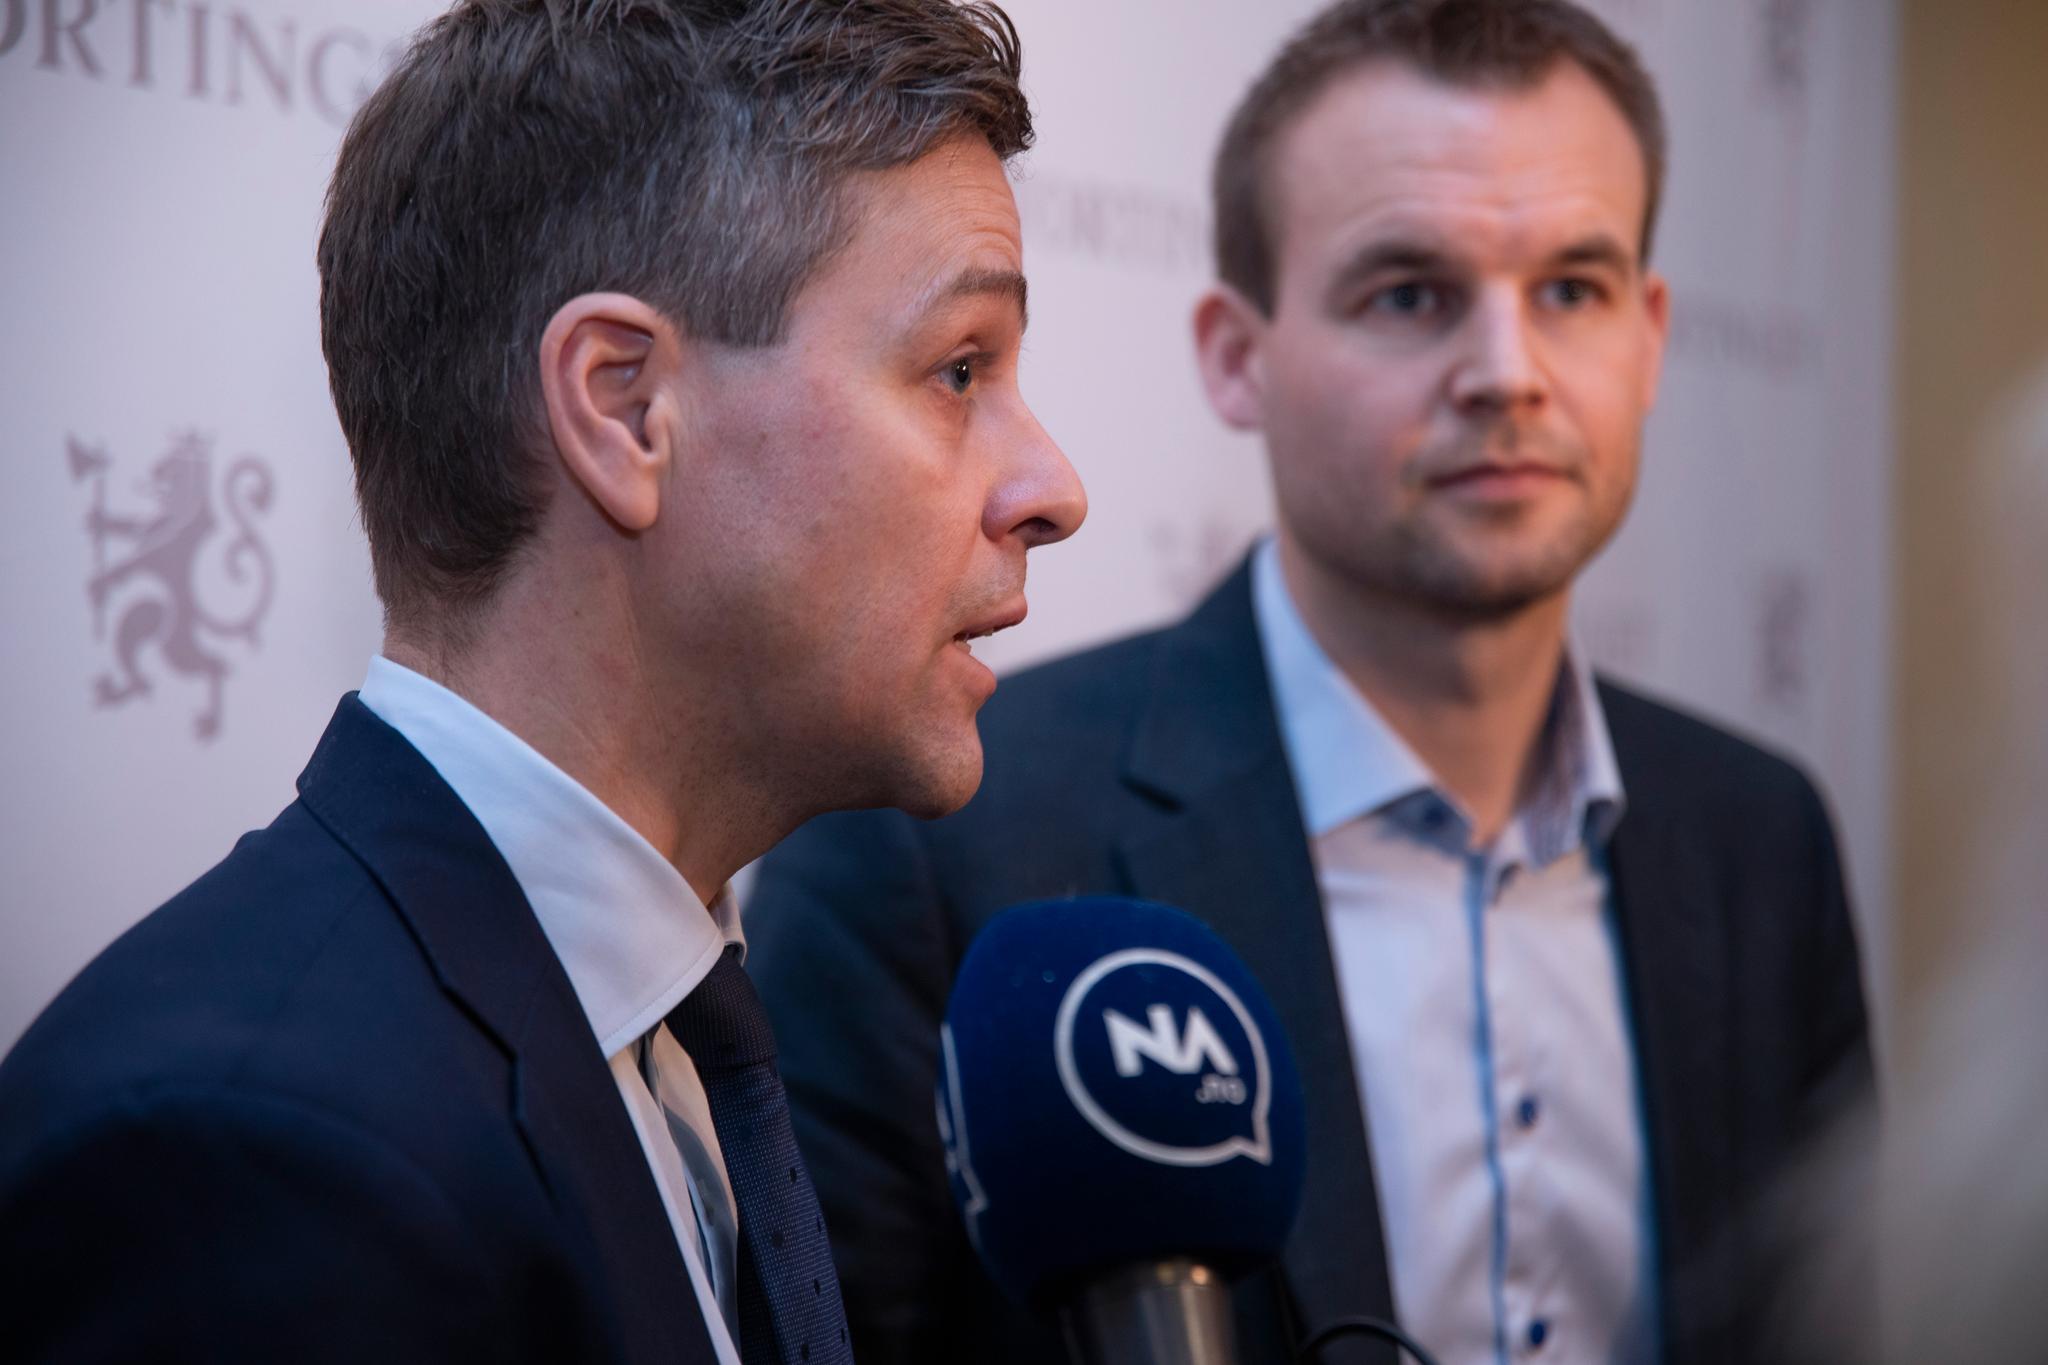 Et enstemmig KrF vil gå i forhandlinger med regjeringspartiene, fortalte partileder Knut Arild Hareide og forhandlingsleder Kjell Ingolf Ropstad.